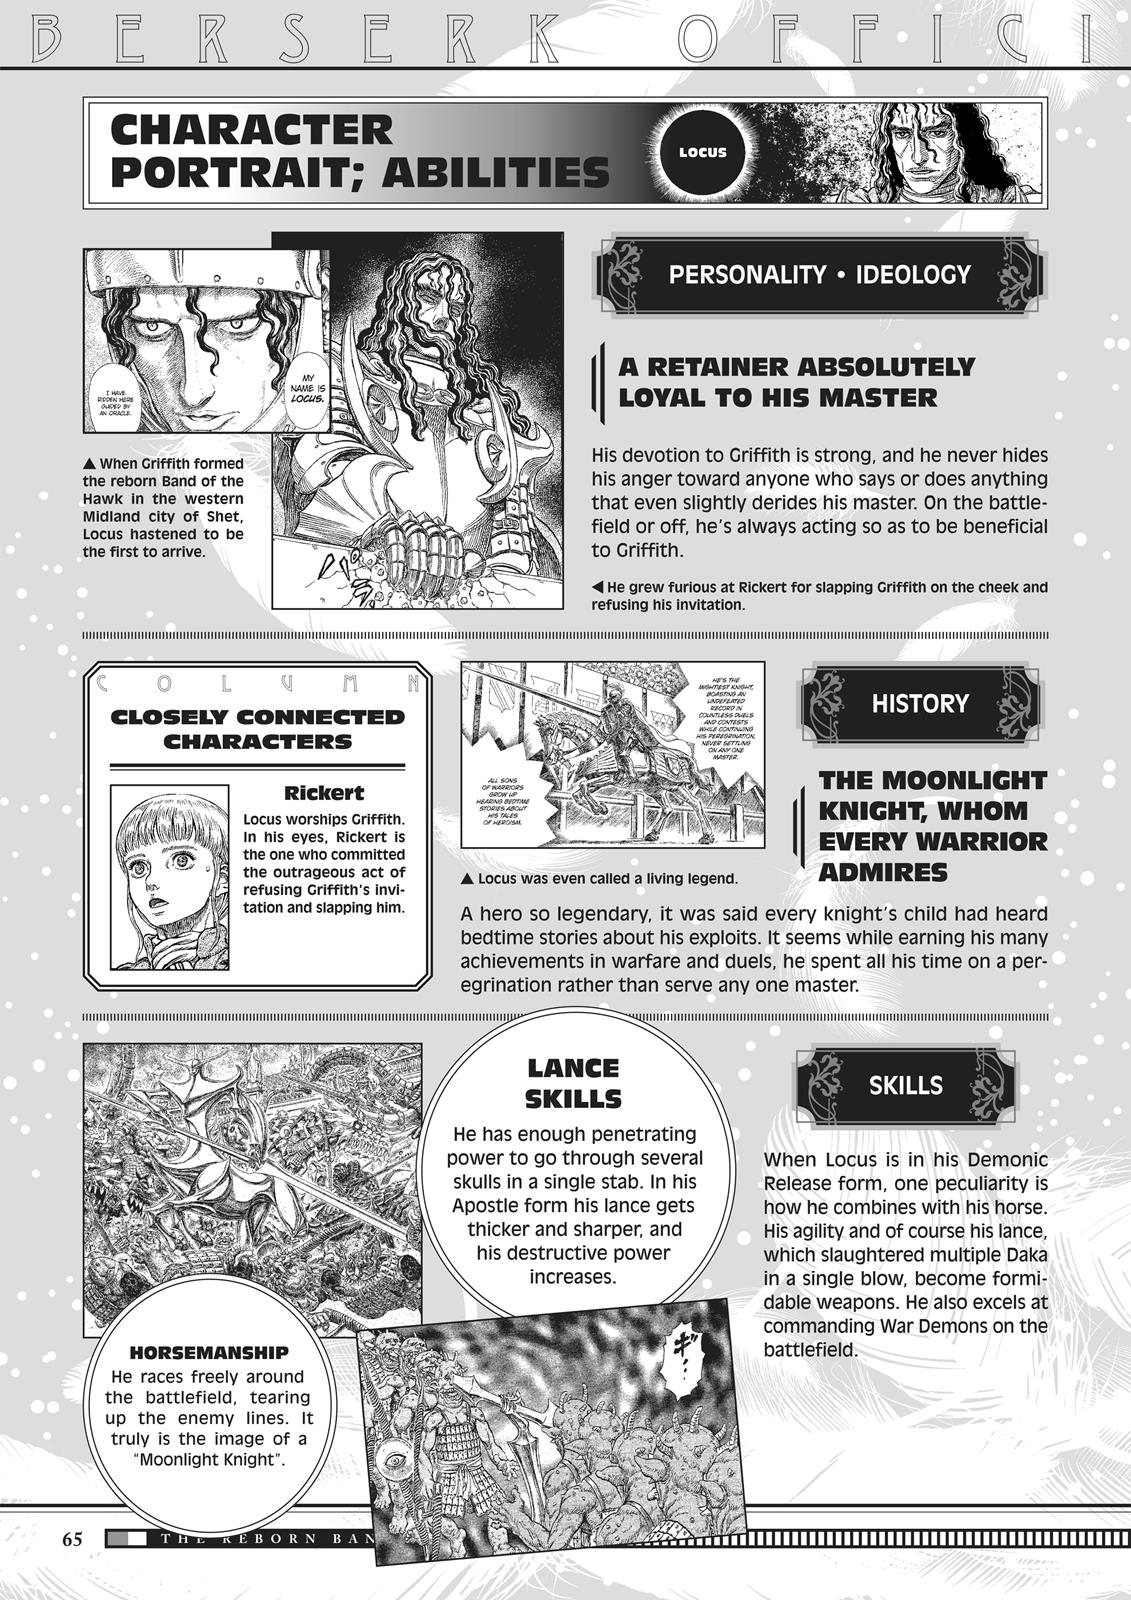 Berserk Manga Chapter 350.5 image 064